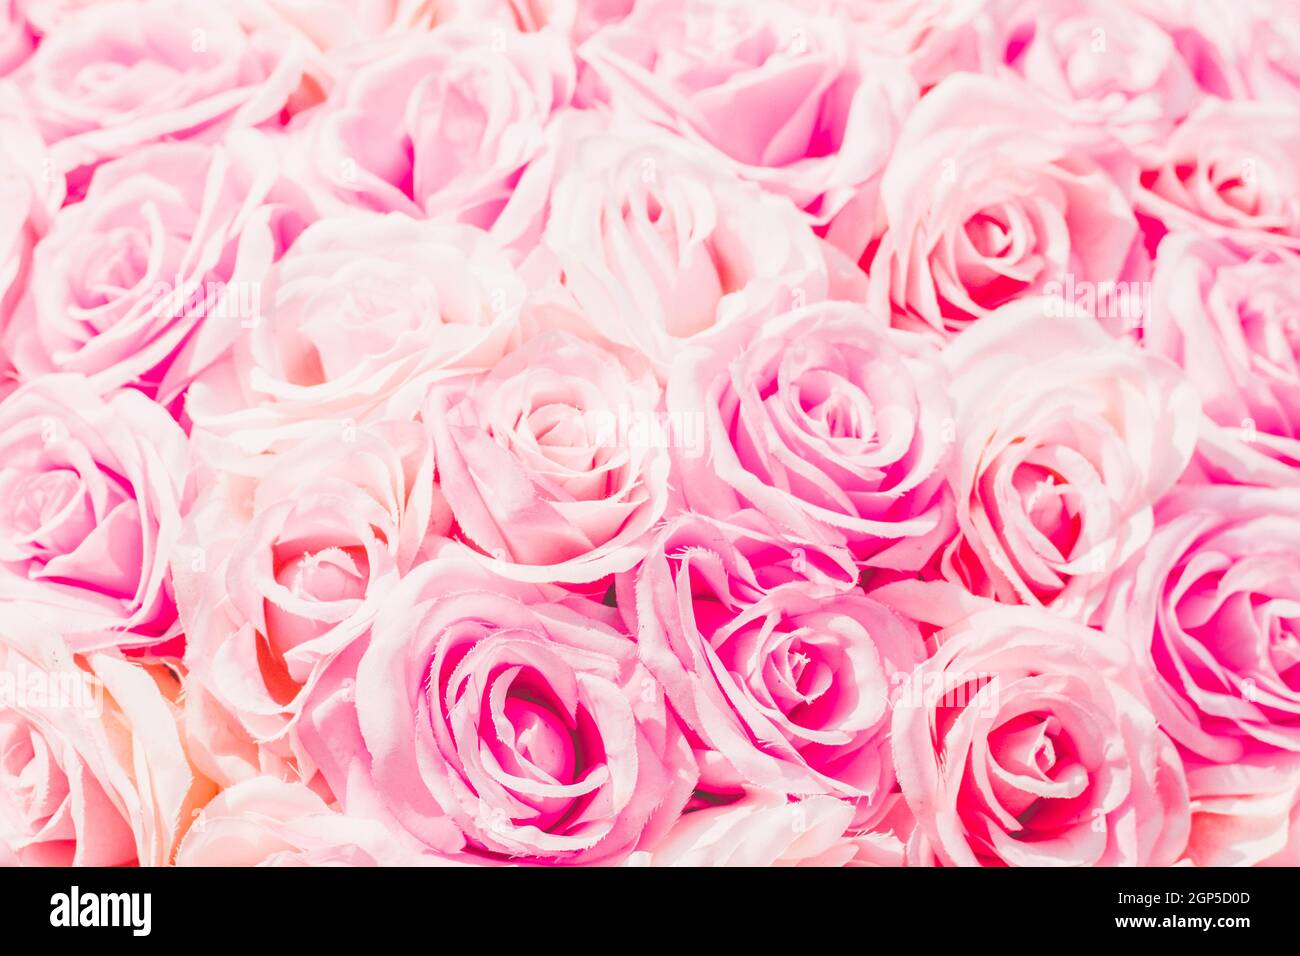 Selektive Fokus schöne rosa Blumen Hintergrund. Abstrakt weichen süßen rosa Blume Hintergrund. Schöne rosa Rosen Blume Blüte Blume Hintergrund Stockfoto